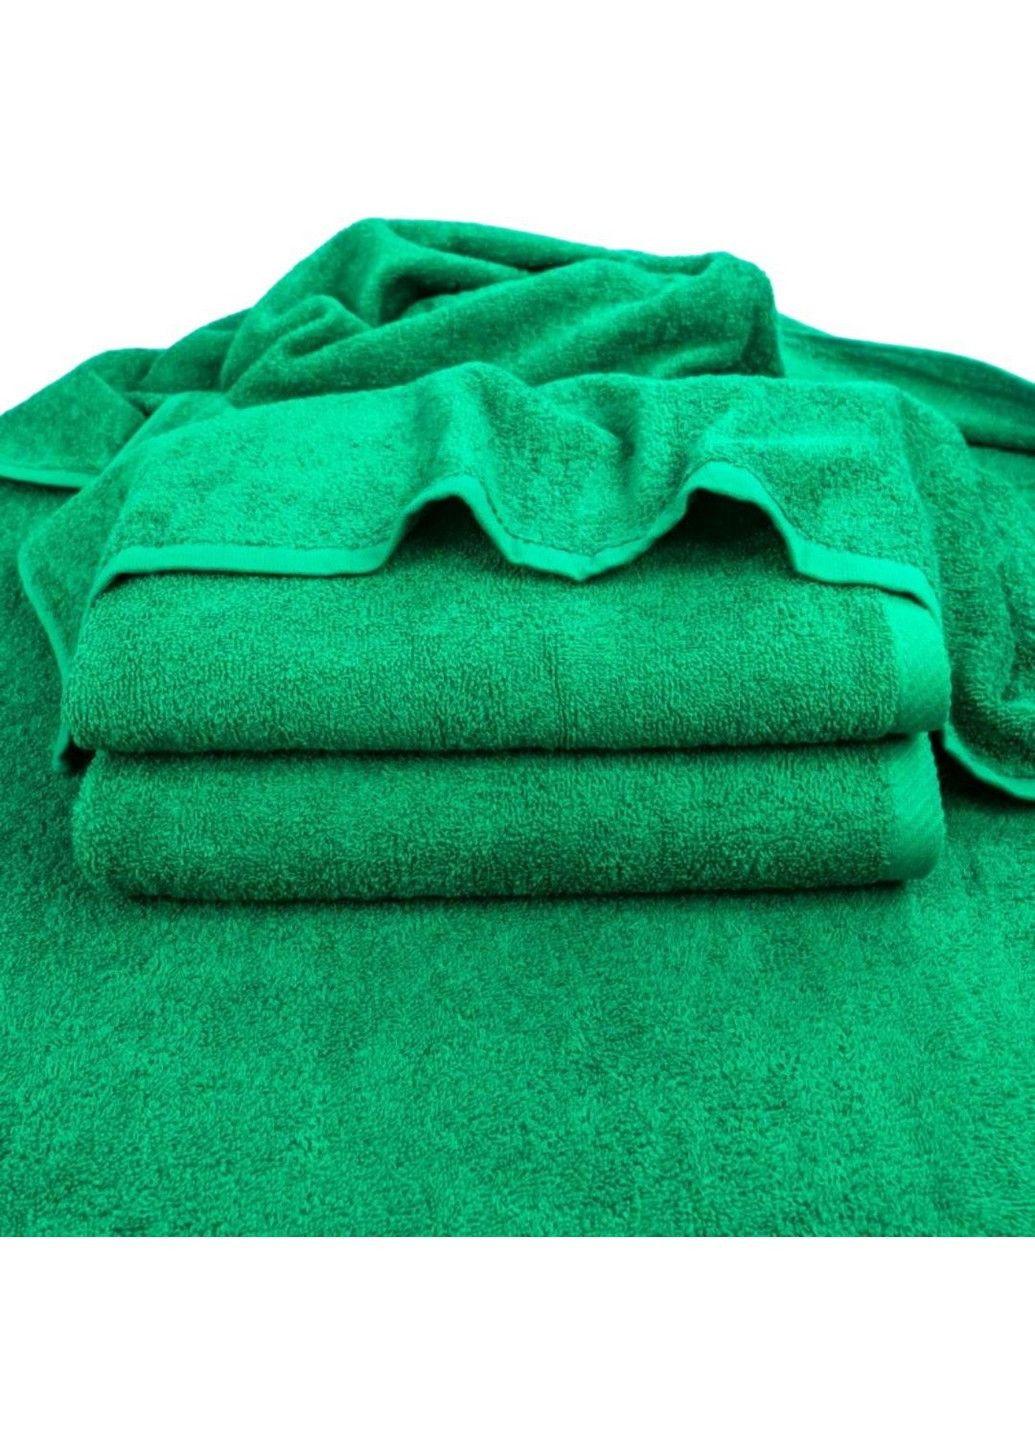 GM Textile рушник махровий, 50*90 см зелений виробництво - Узбекистан